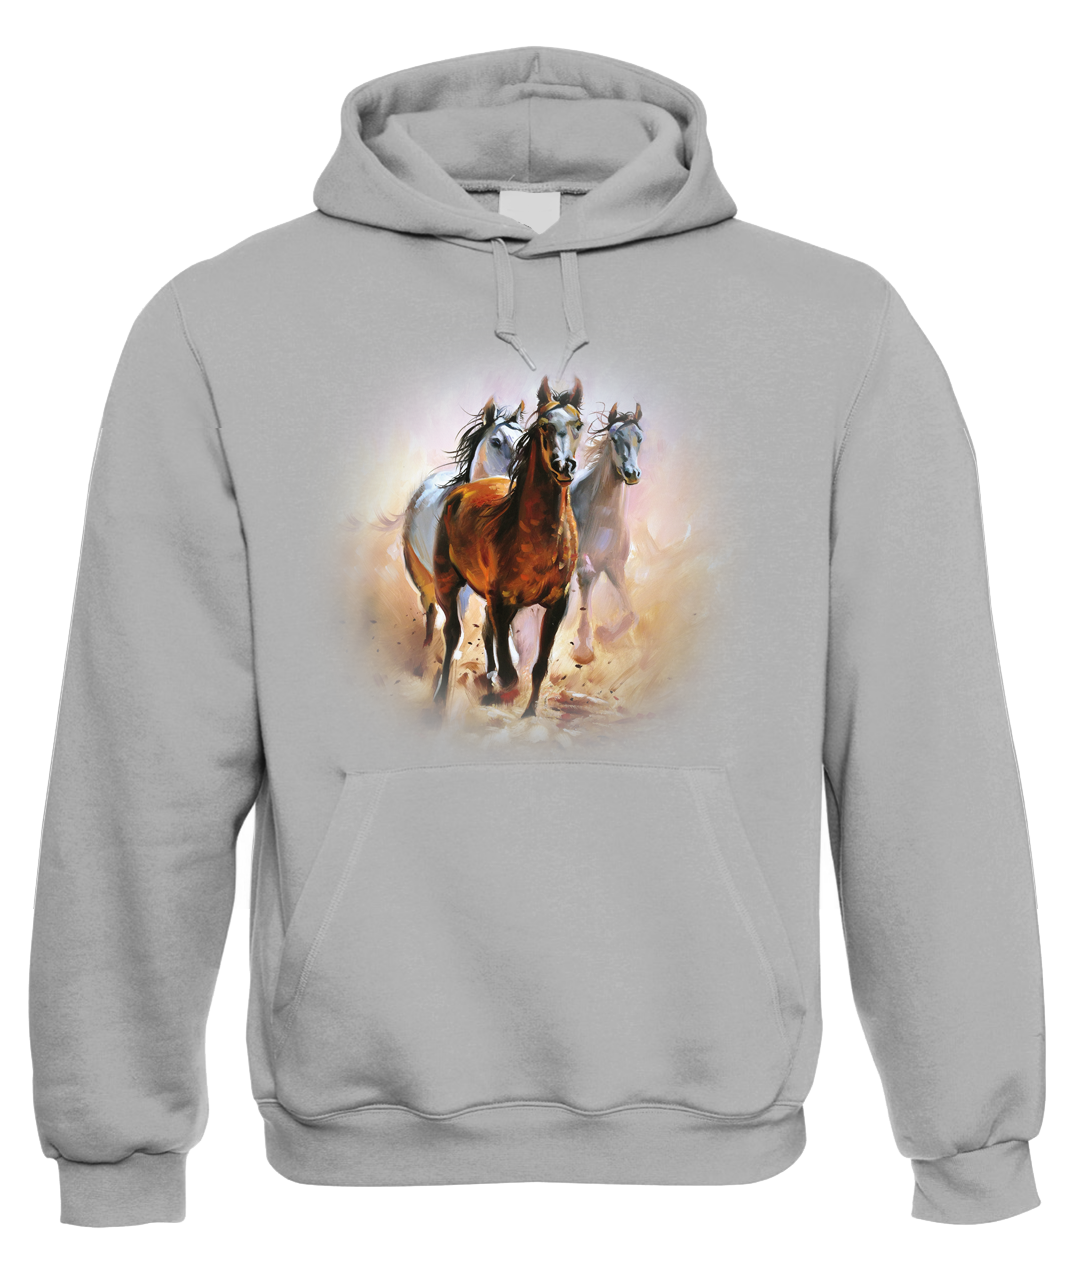 Mikina s koněm - Malované koně Velikost: XL, Barva: Šedá